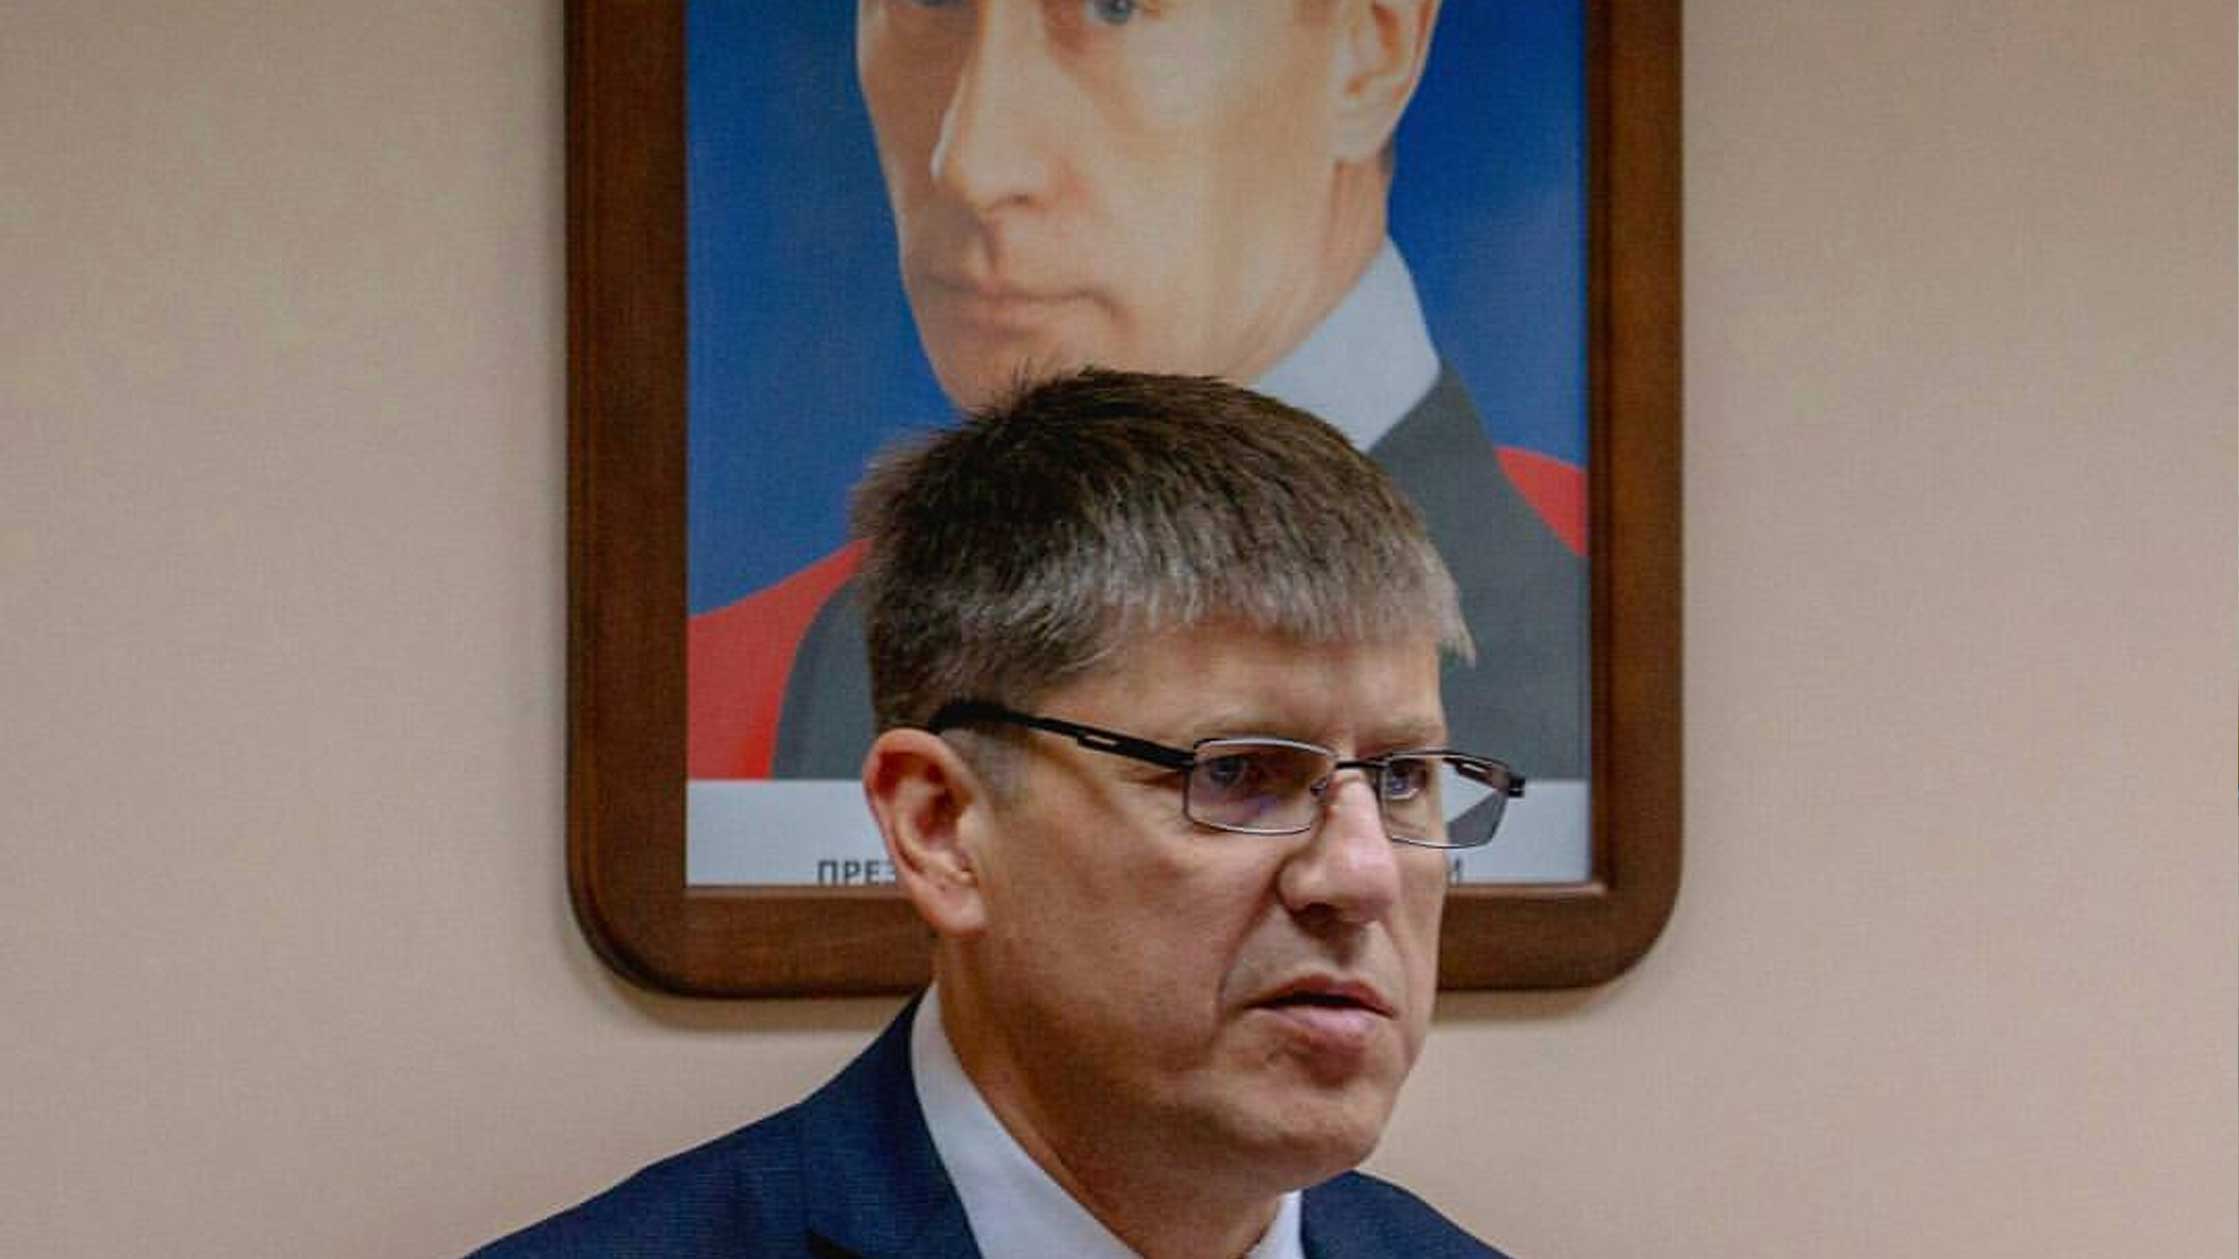 Силанов покинул свой пост по собственному желанию, а его отставку принял совет депутатов Андрей Кропоткин